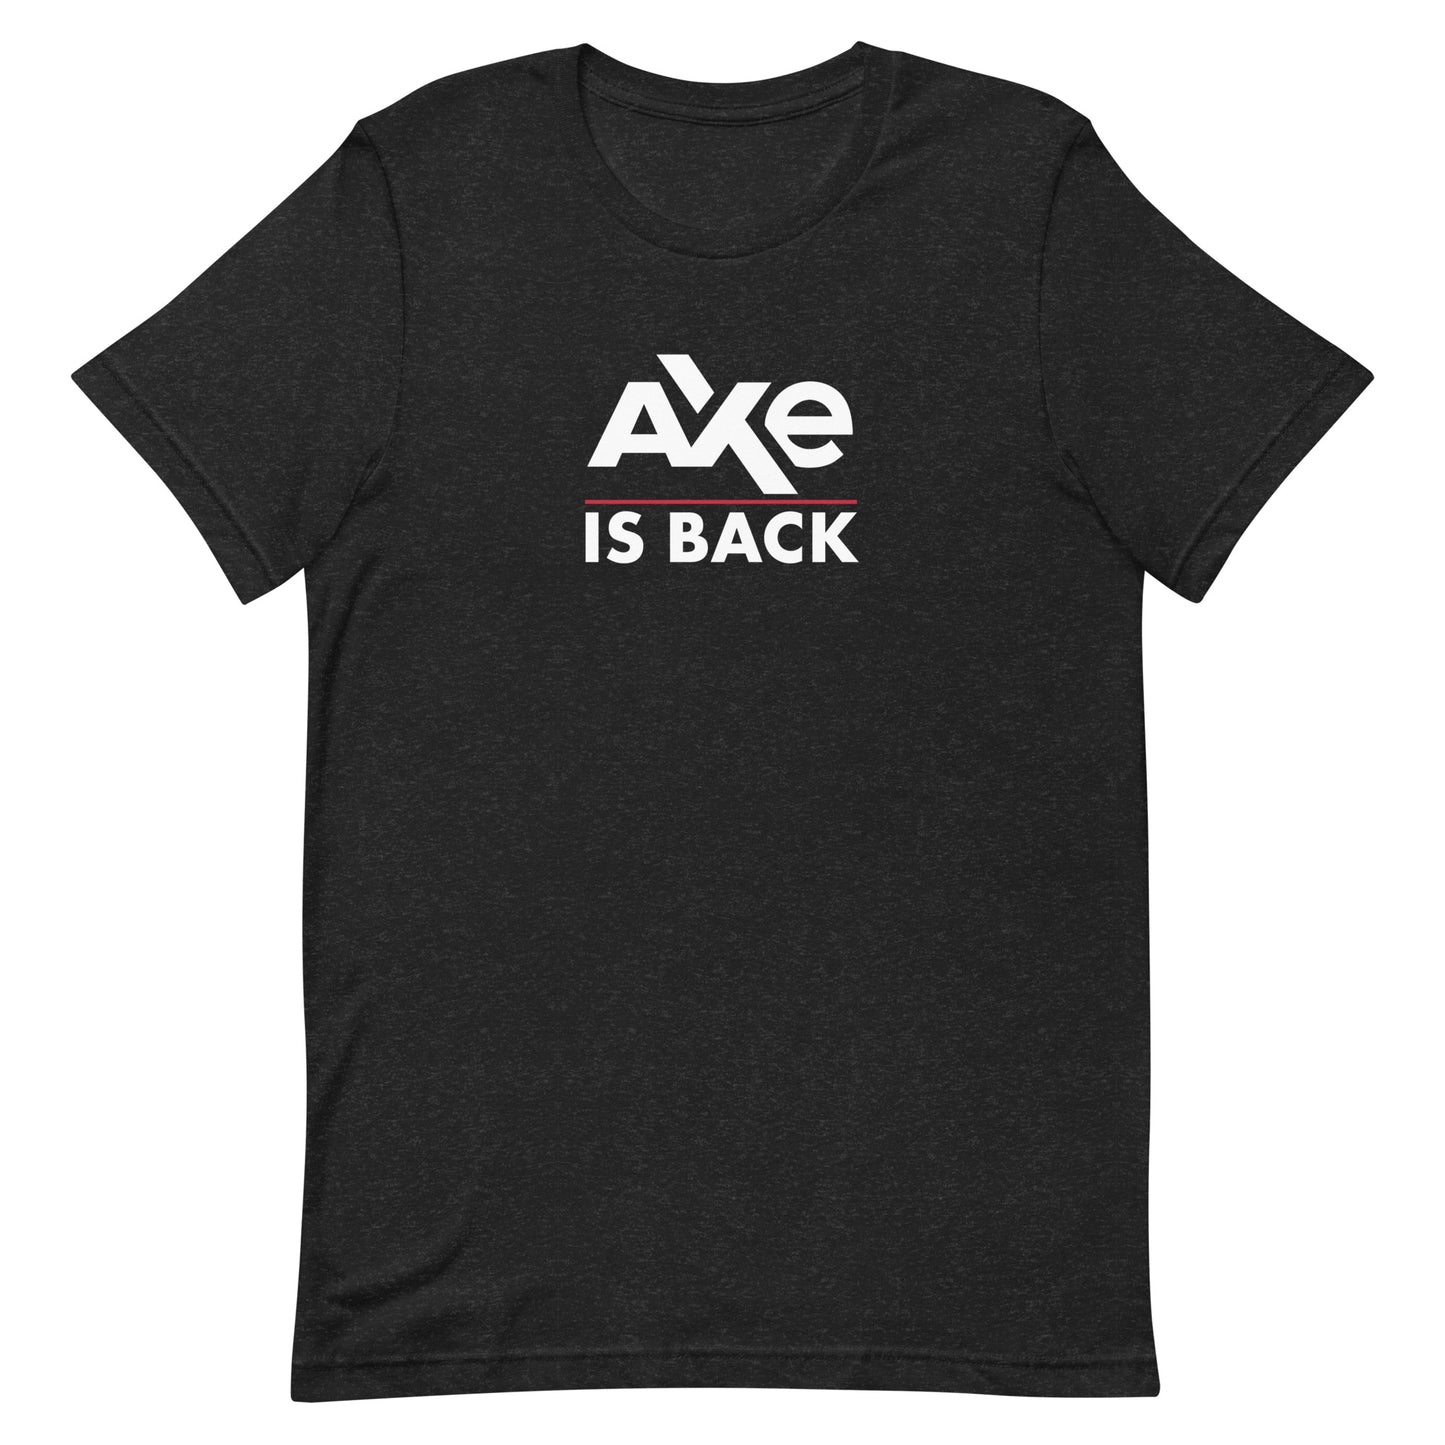 Billions Axe ist zurück T-shirt